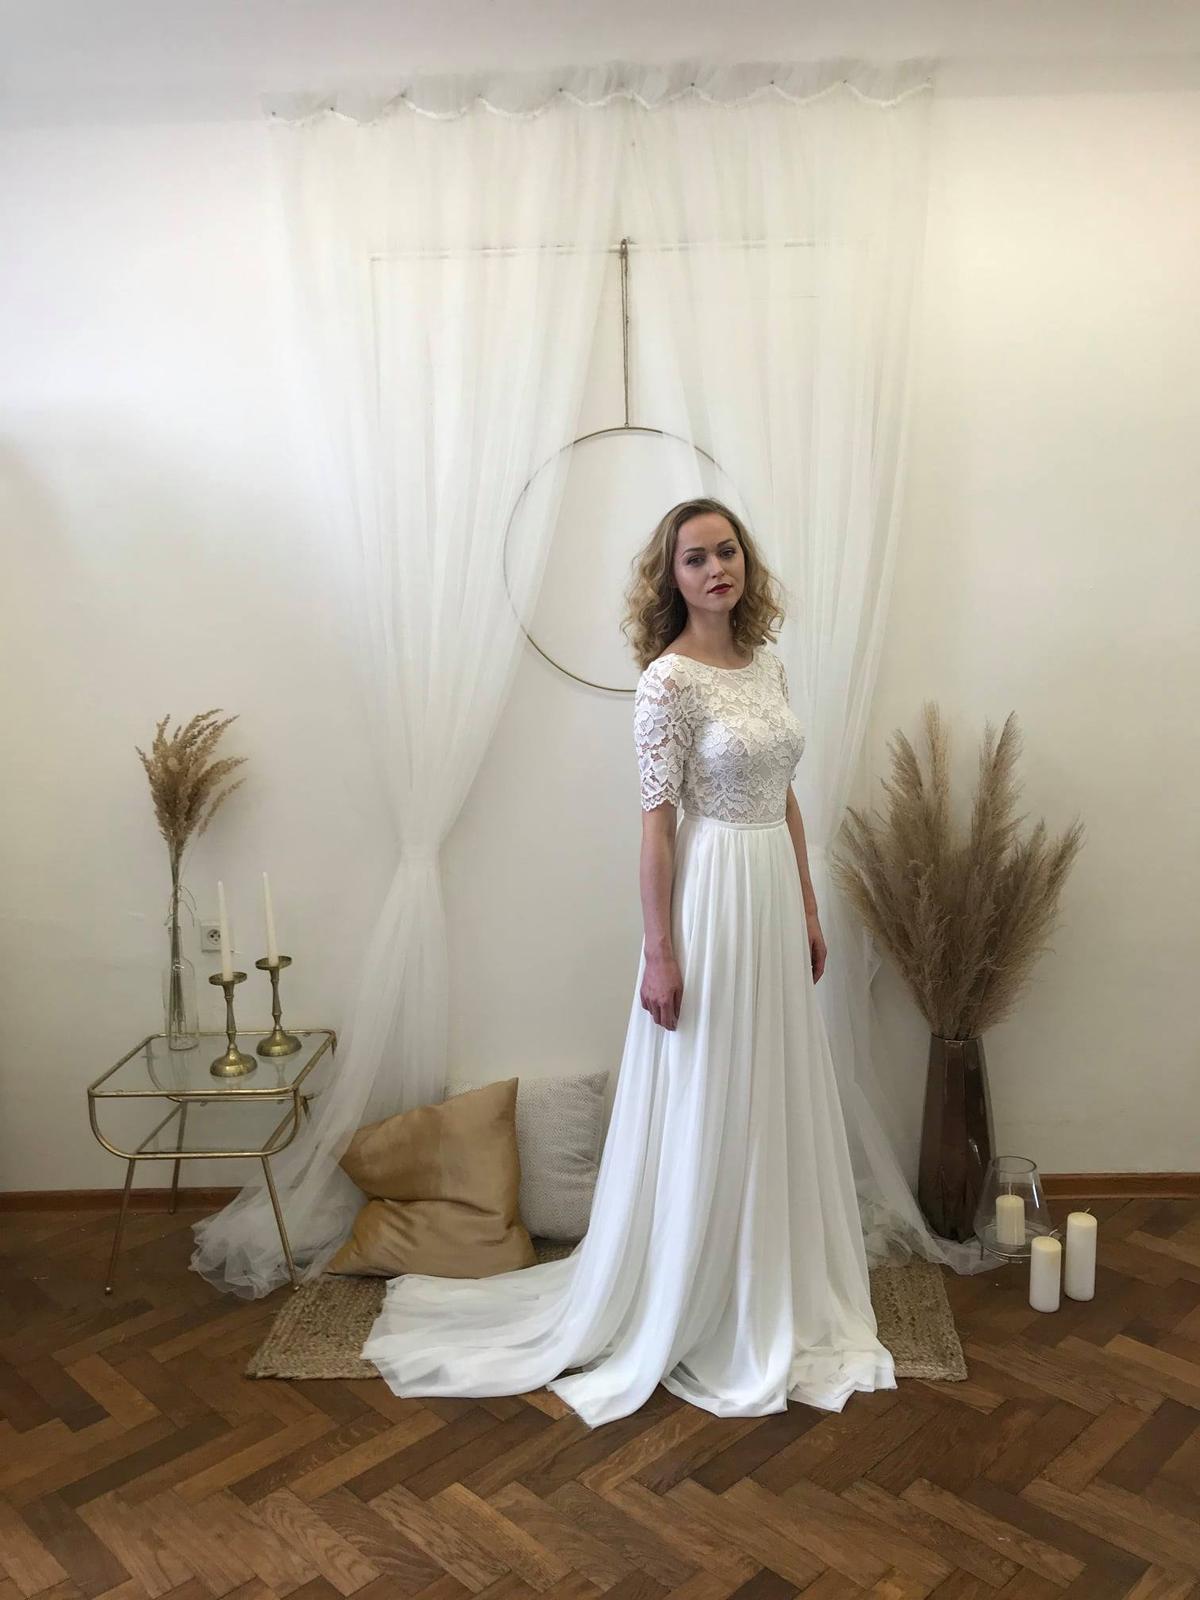 Šifonové svatební šaty s krajkou - Obrázek č. 1